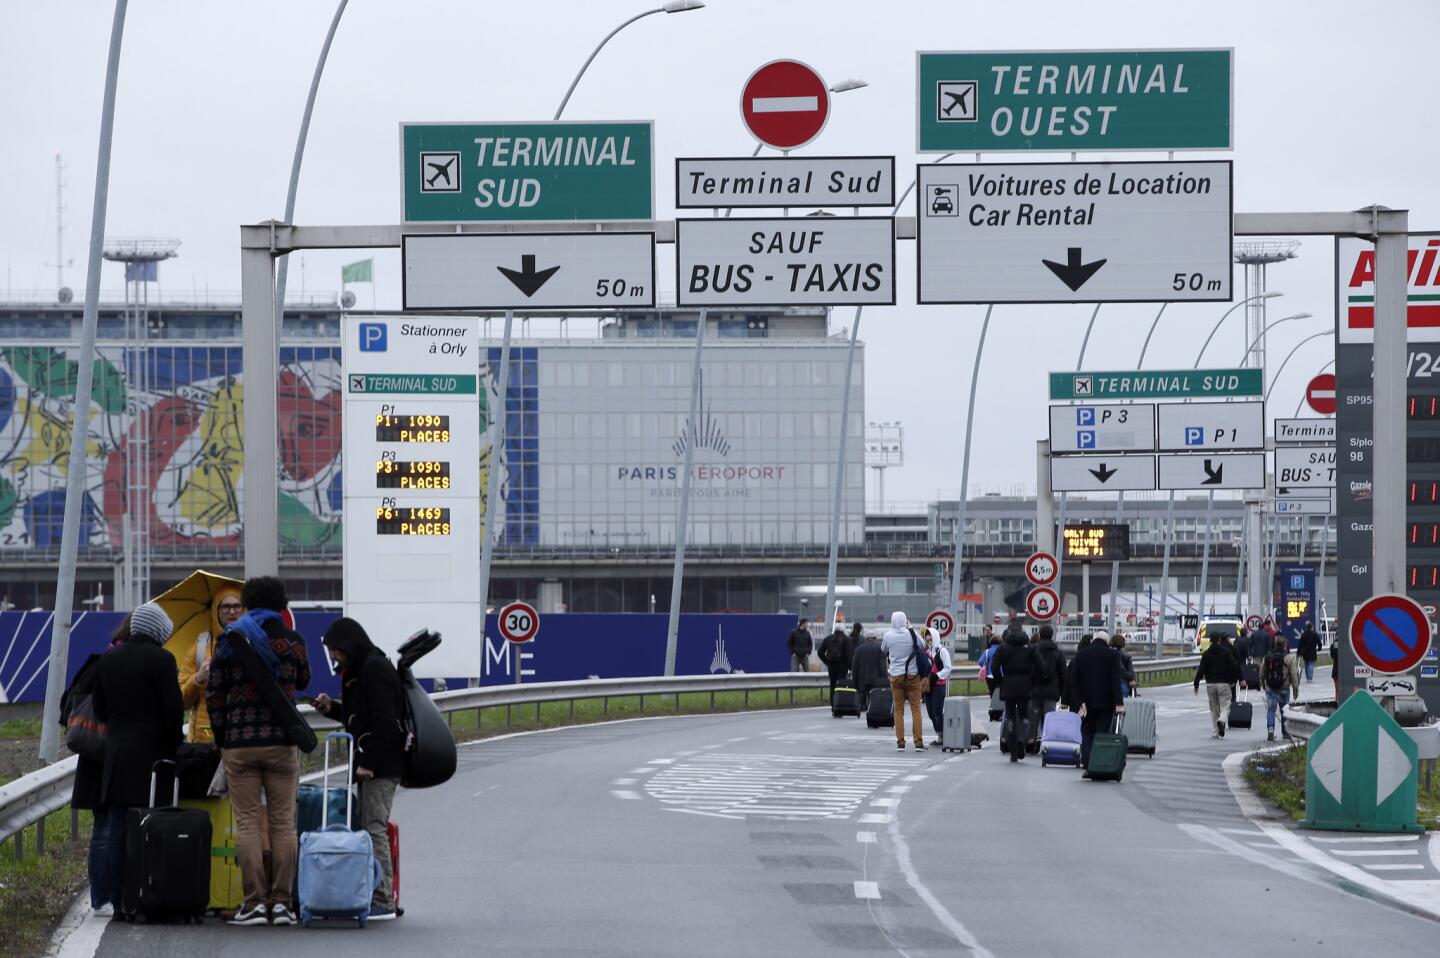 Viajeros caminan por la autopista que llega al aeropuerto de Orly, al sur de París, el sábado 18 de marzo de 2017. Un hombre murió baleado en el aeropuerto tras arrebatar un fusil a una soldado que protegía el lugar, según la policía, lo que provocó una evacuación parcial de la terminal. (AP Foto/Thibault Camus)